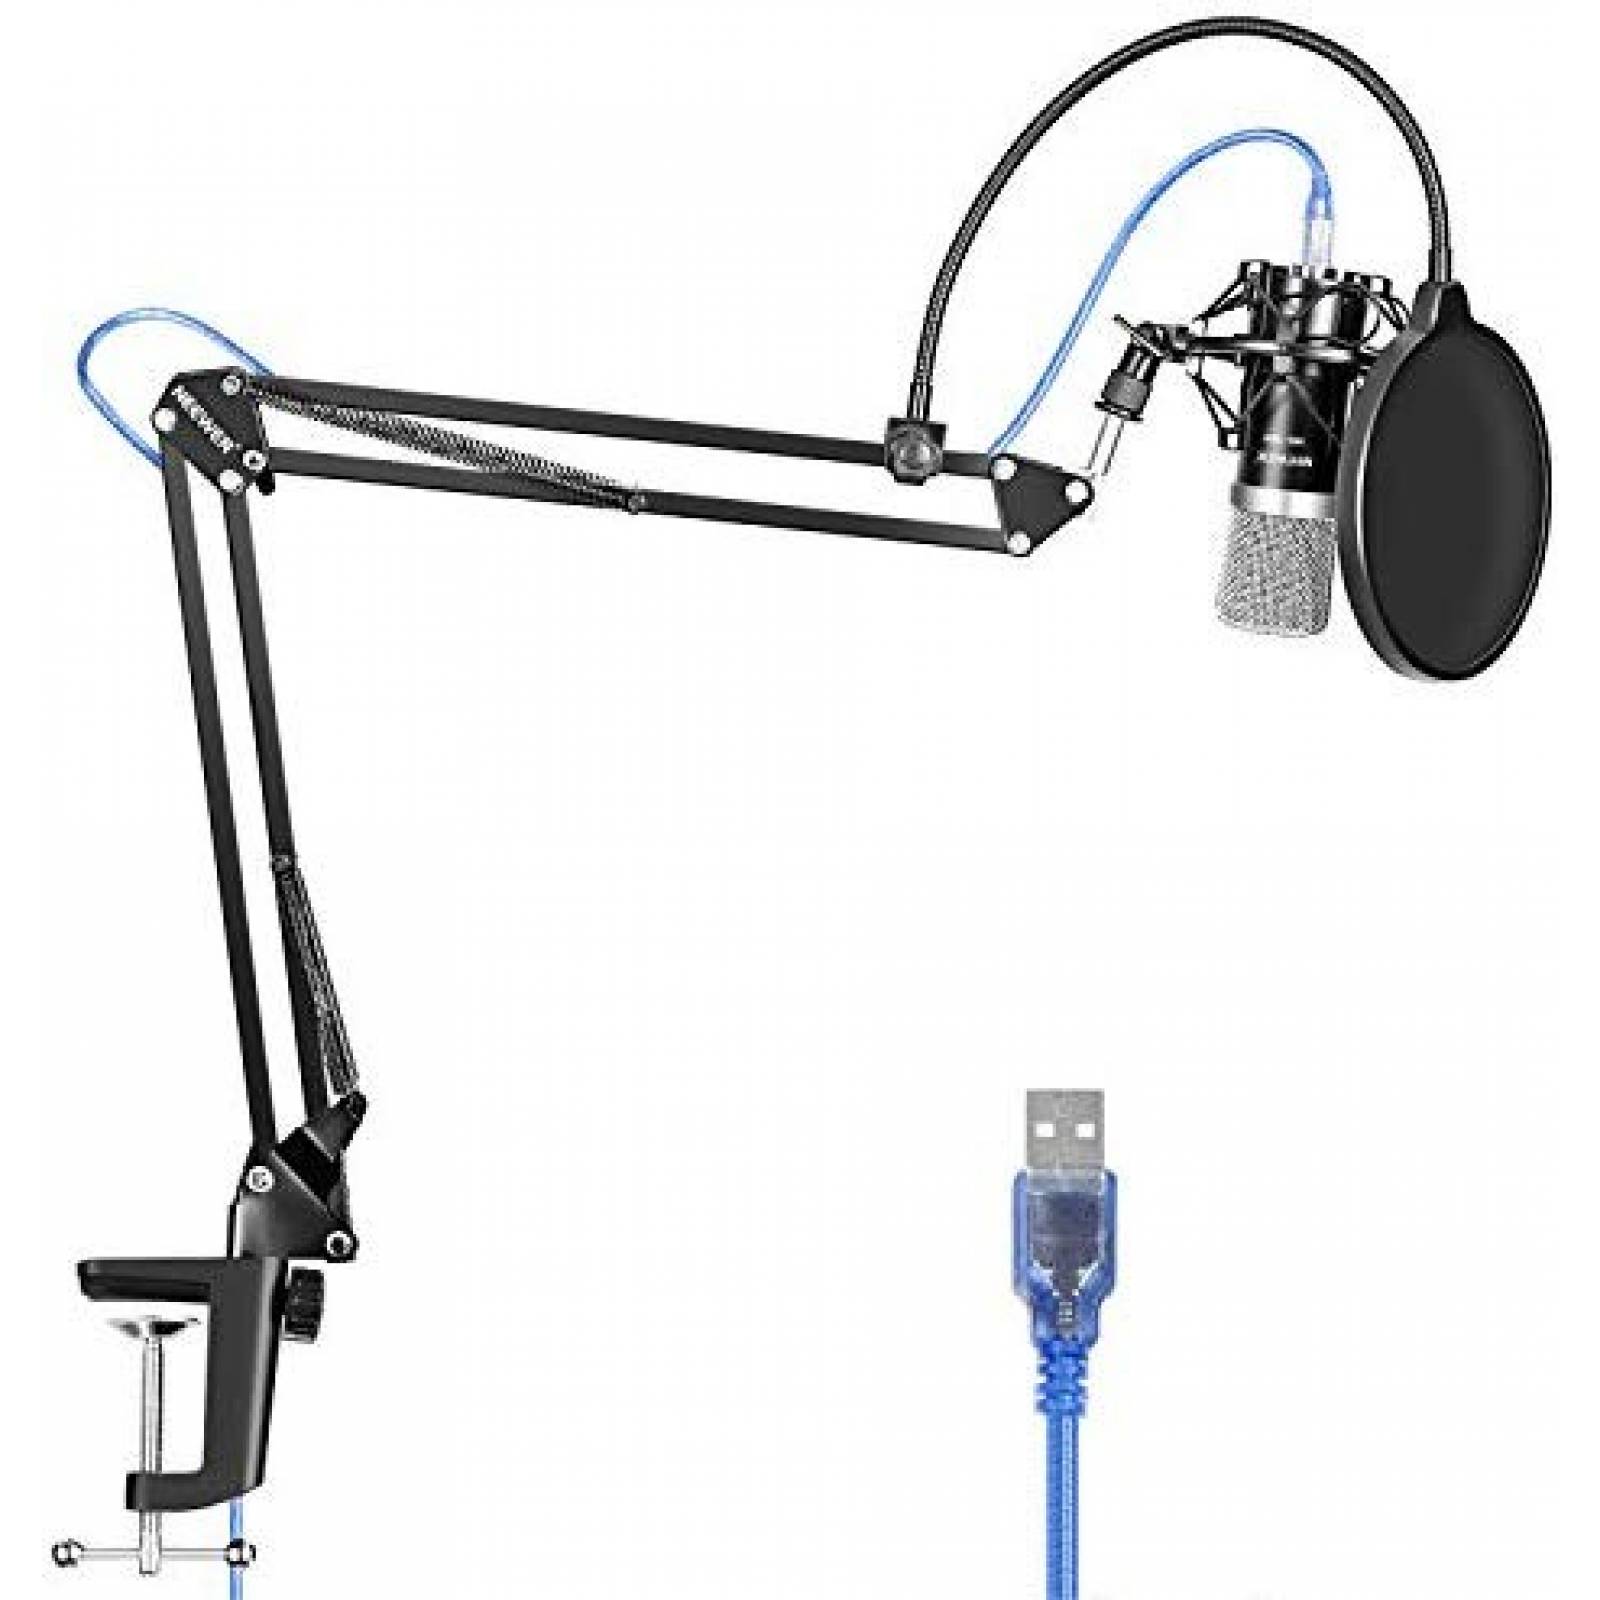 Kit de Micrófono USB Neewer + soporte de brazo -negro